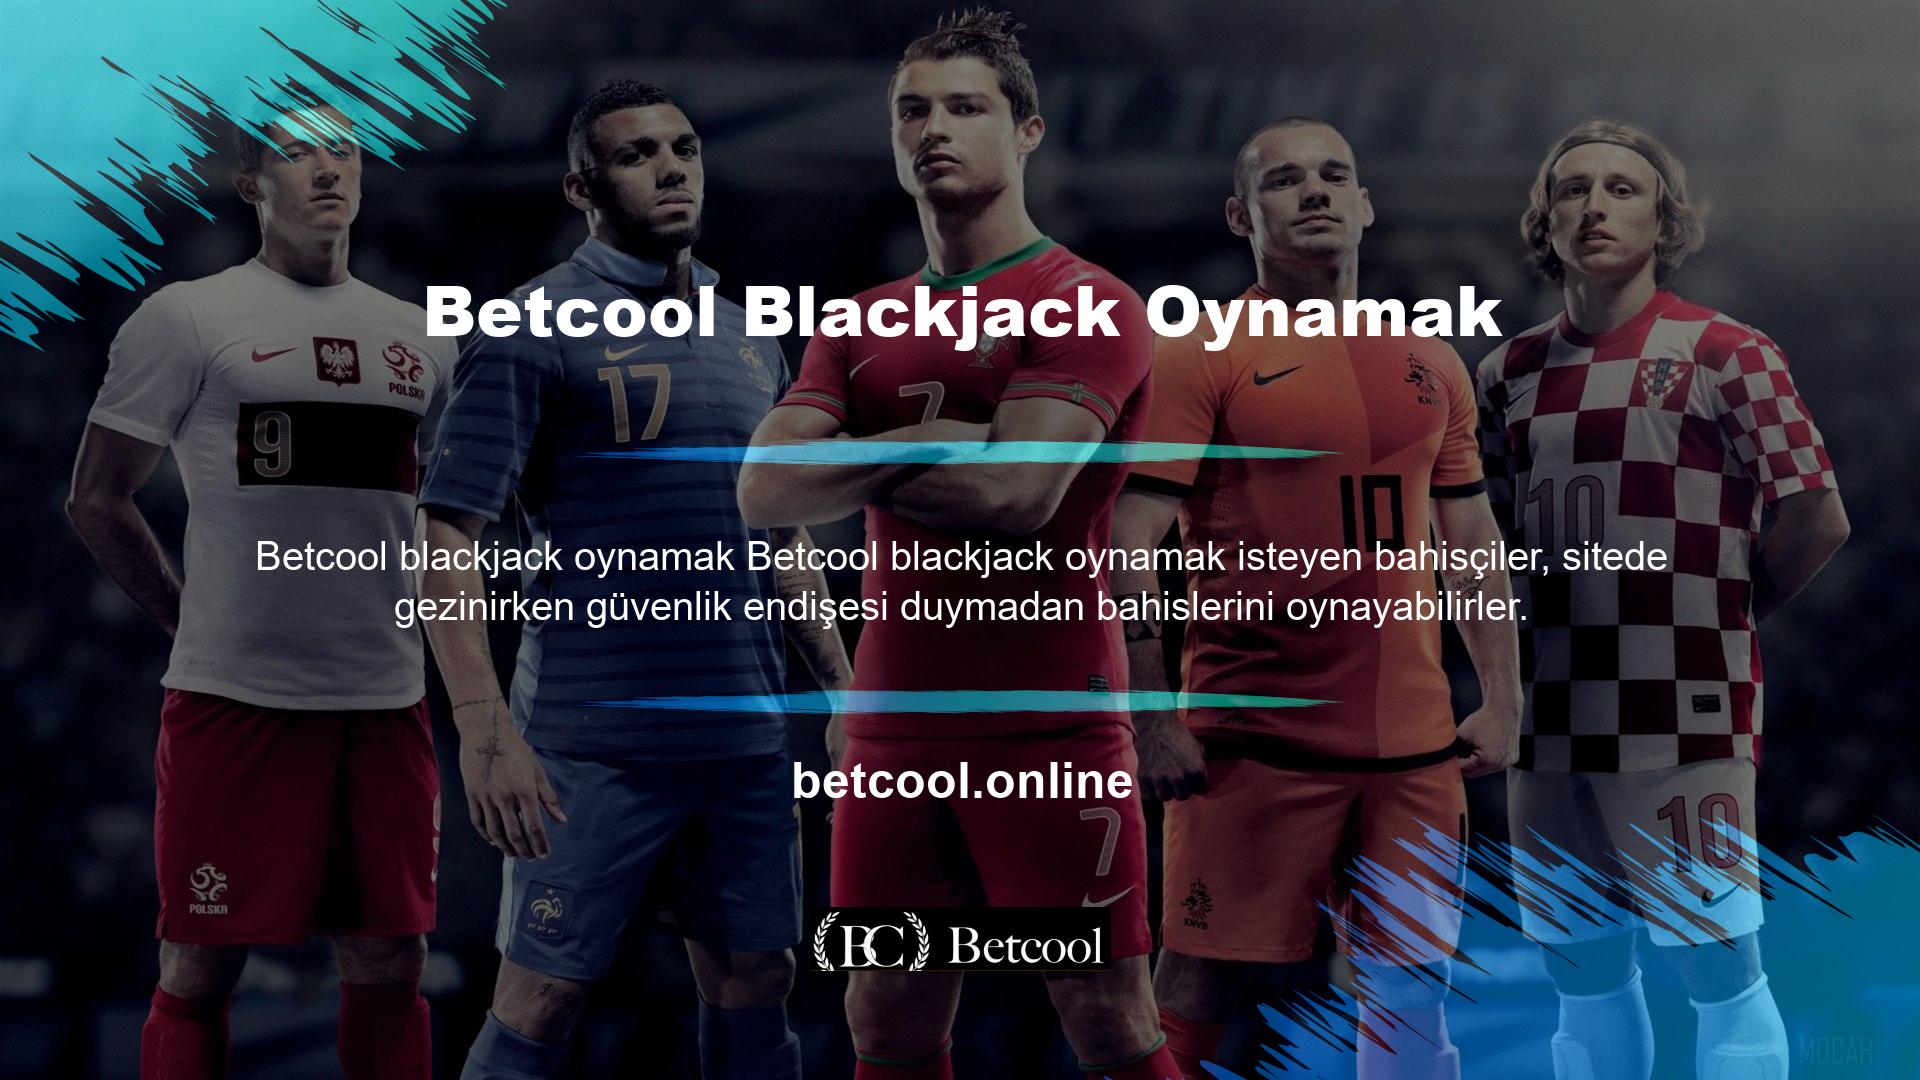 Betcool, web sitesi kullanıcılarının teknik sorunlarla karşılaşması durumunda kullanıcı şikayetlerine yanıt verecektir